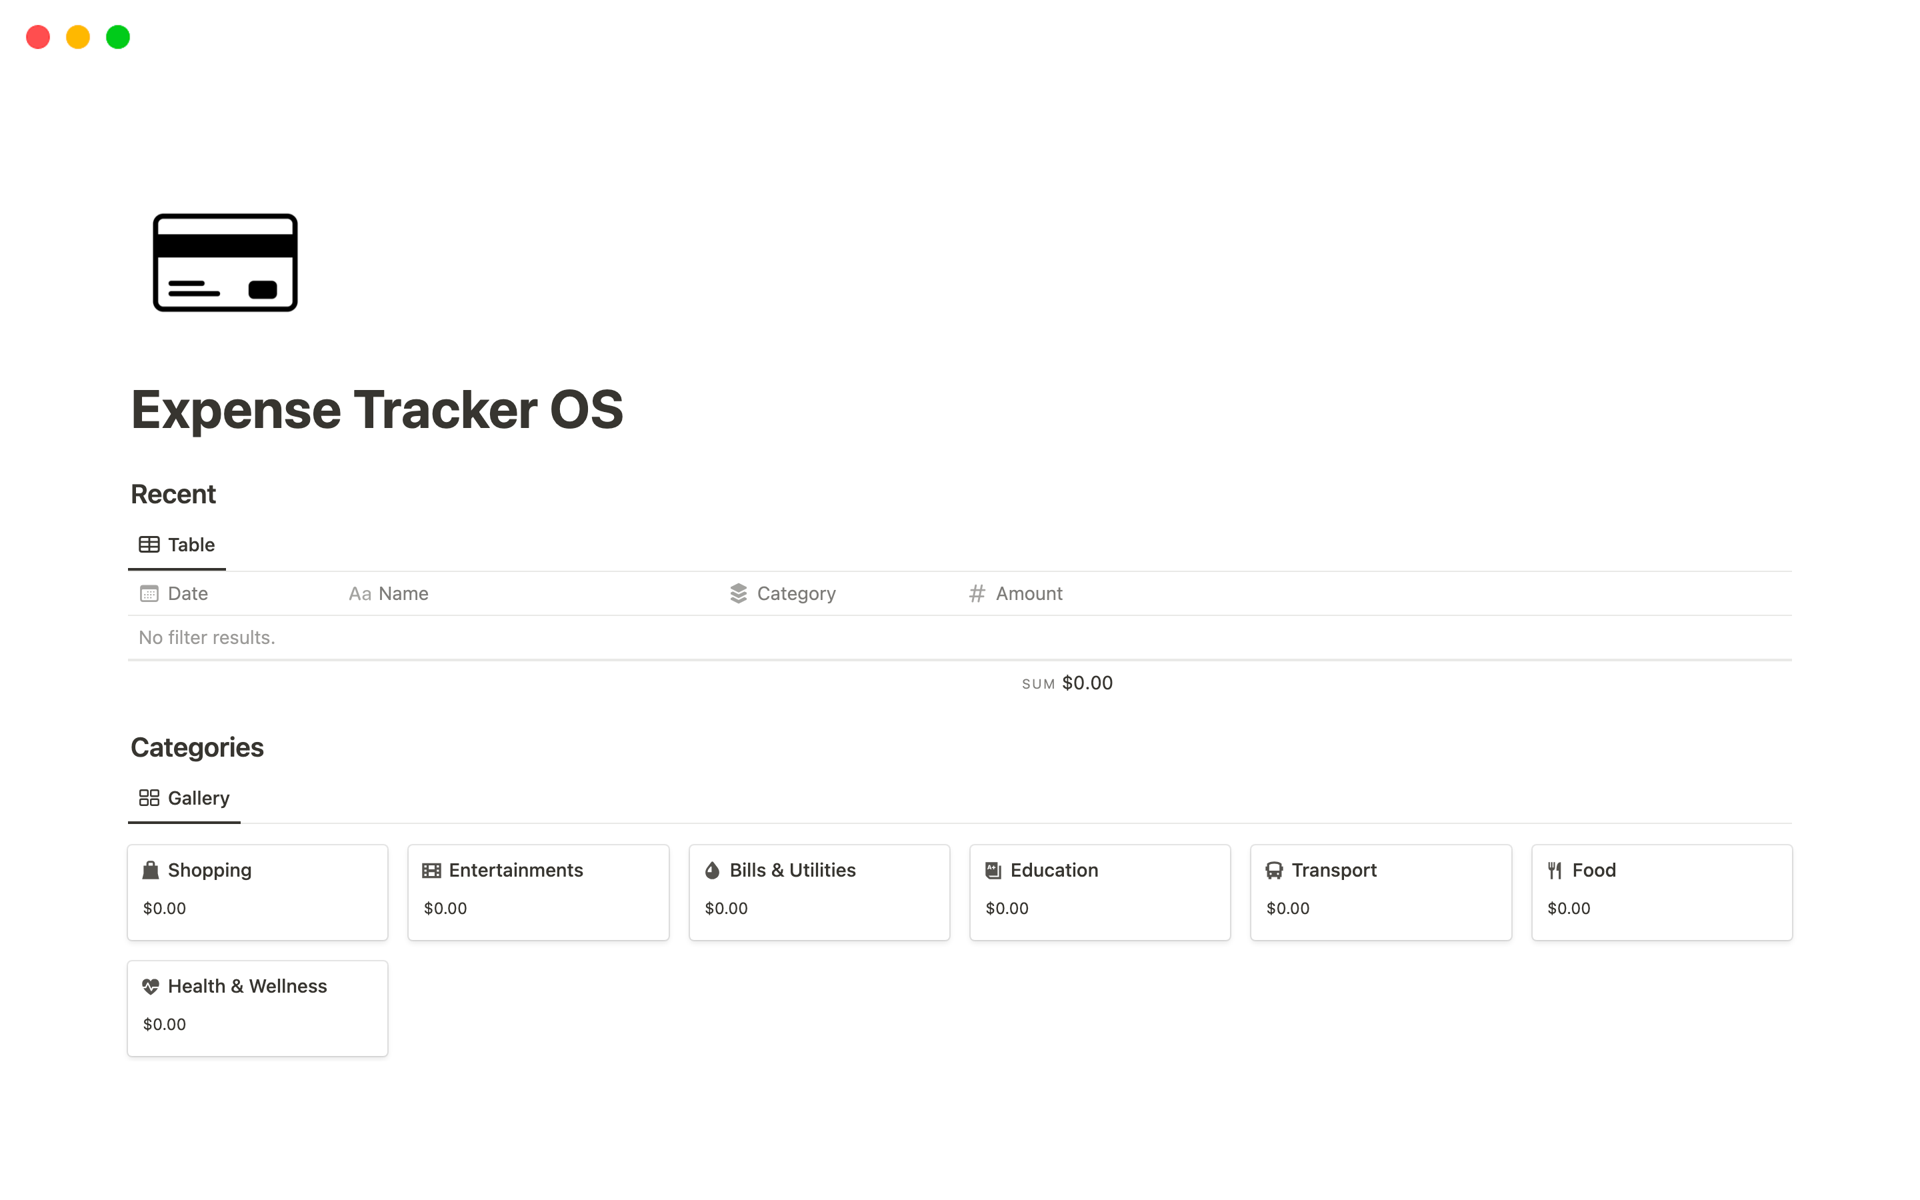 Vista previa de plantilla para Expense Tracker OS